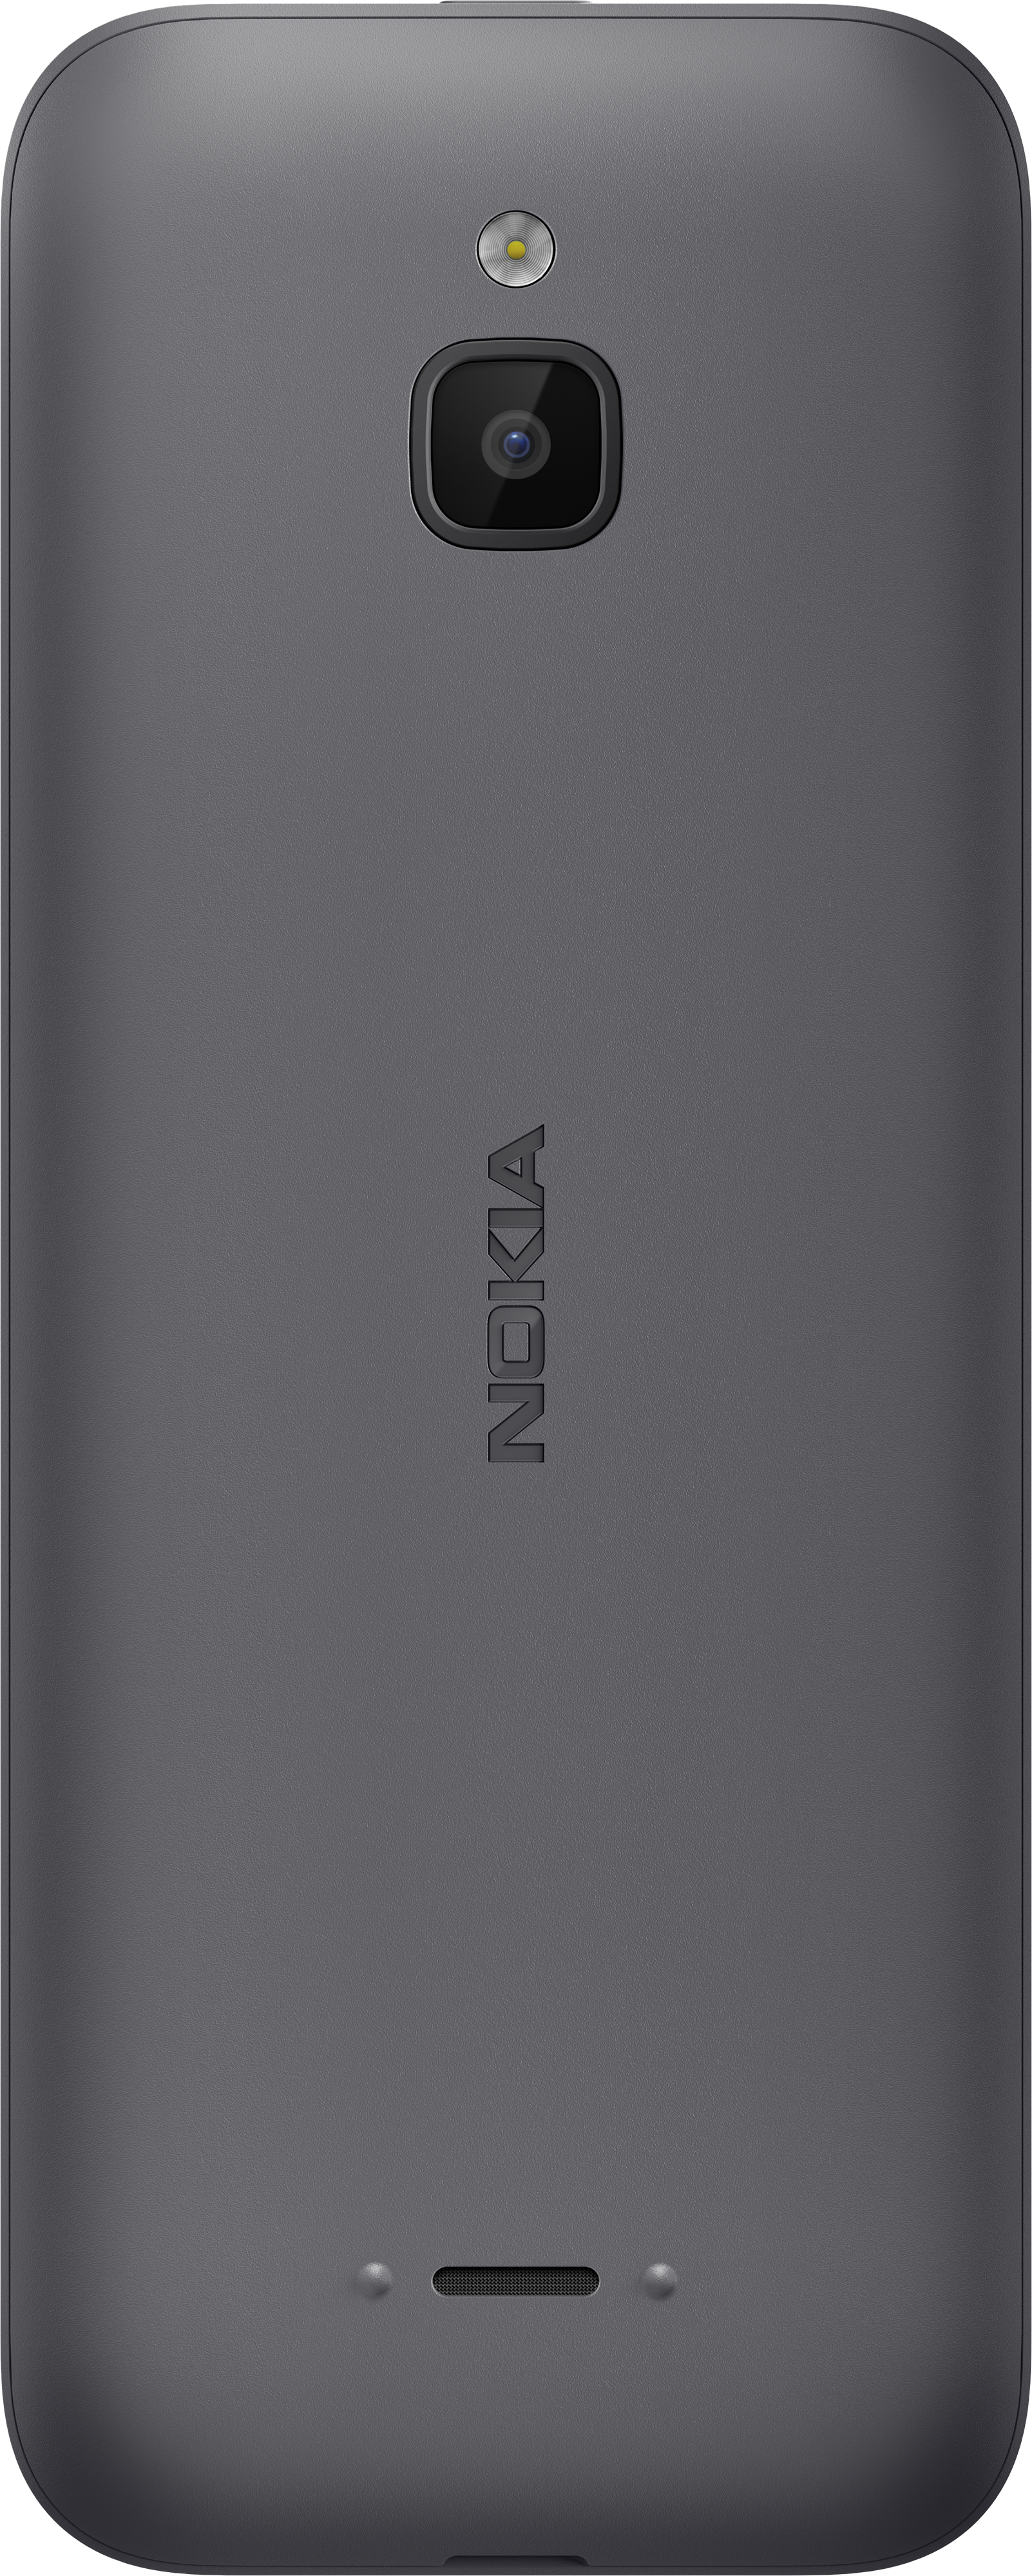 6300 4g купить. Nokia 6300 4g DS Charcoal. Nokia 6300 4g. Nokia 6300 4g DS (ta-1294) Charcoal. Телефон Nokia 6300 4g (серый).